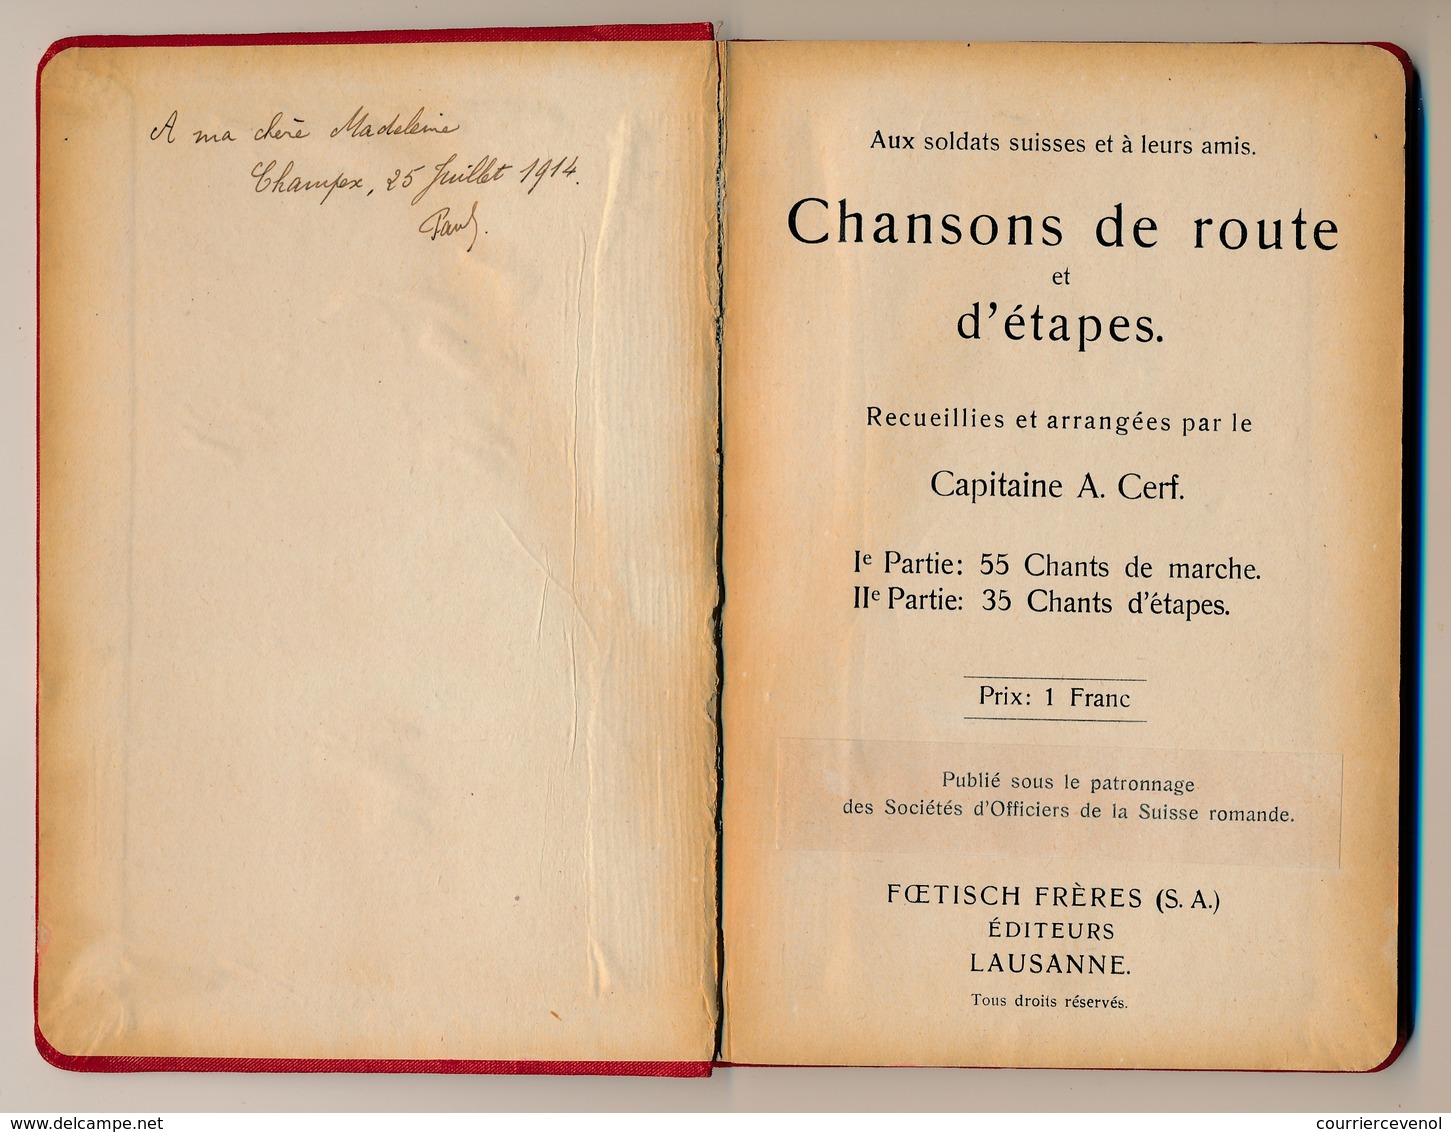 SUISSE - CHANSONNIER MILITAIRE - Editions Foetisch Frères (Lausanne) - Début 20eme Siècle, Mention Man. 1914 - Documenti